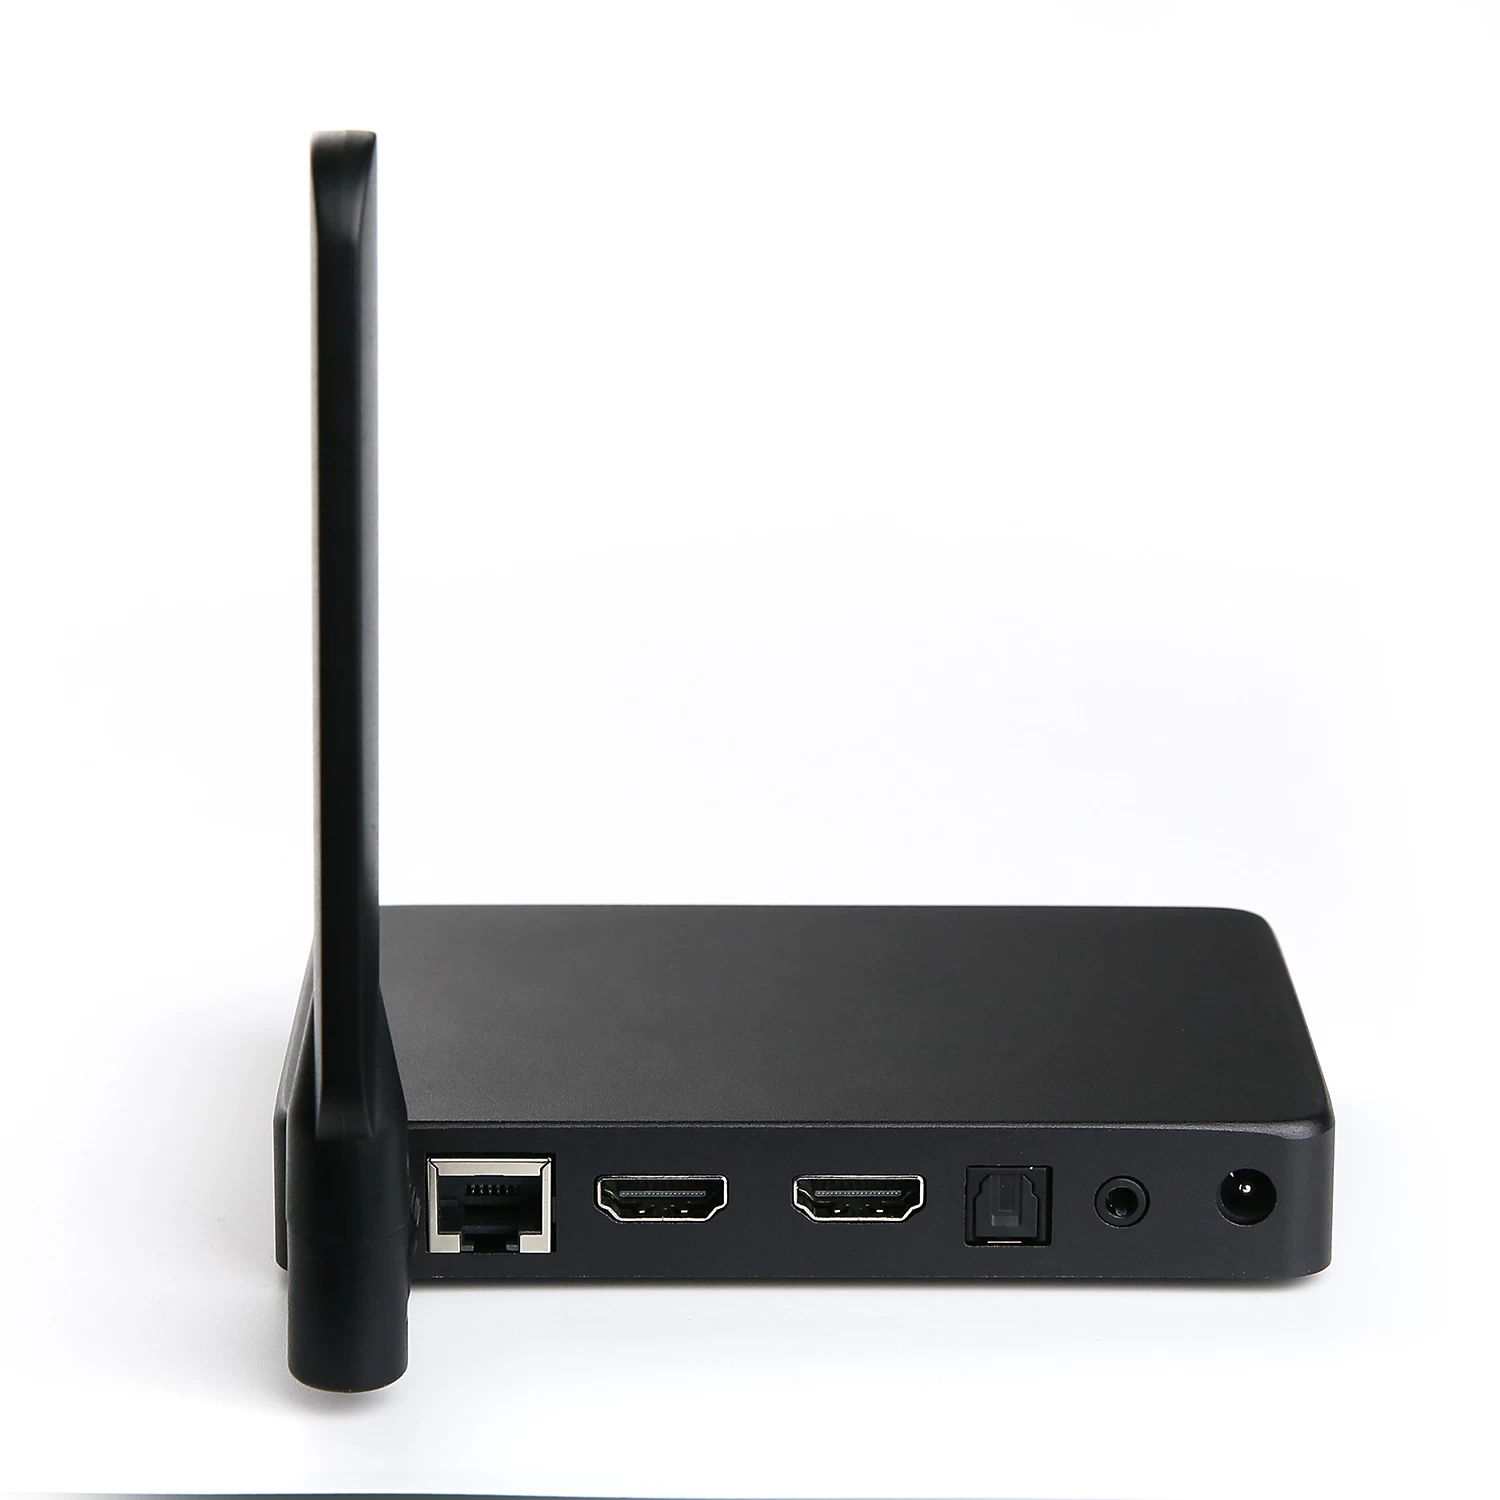 Smart TV Box HDMI Input, Best TV Box HDMI Input